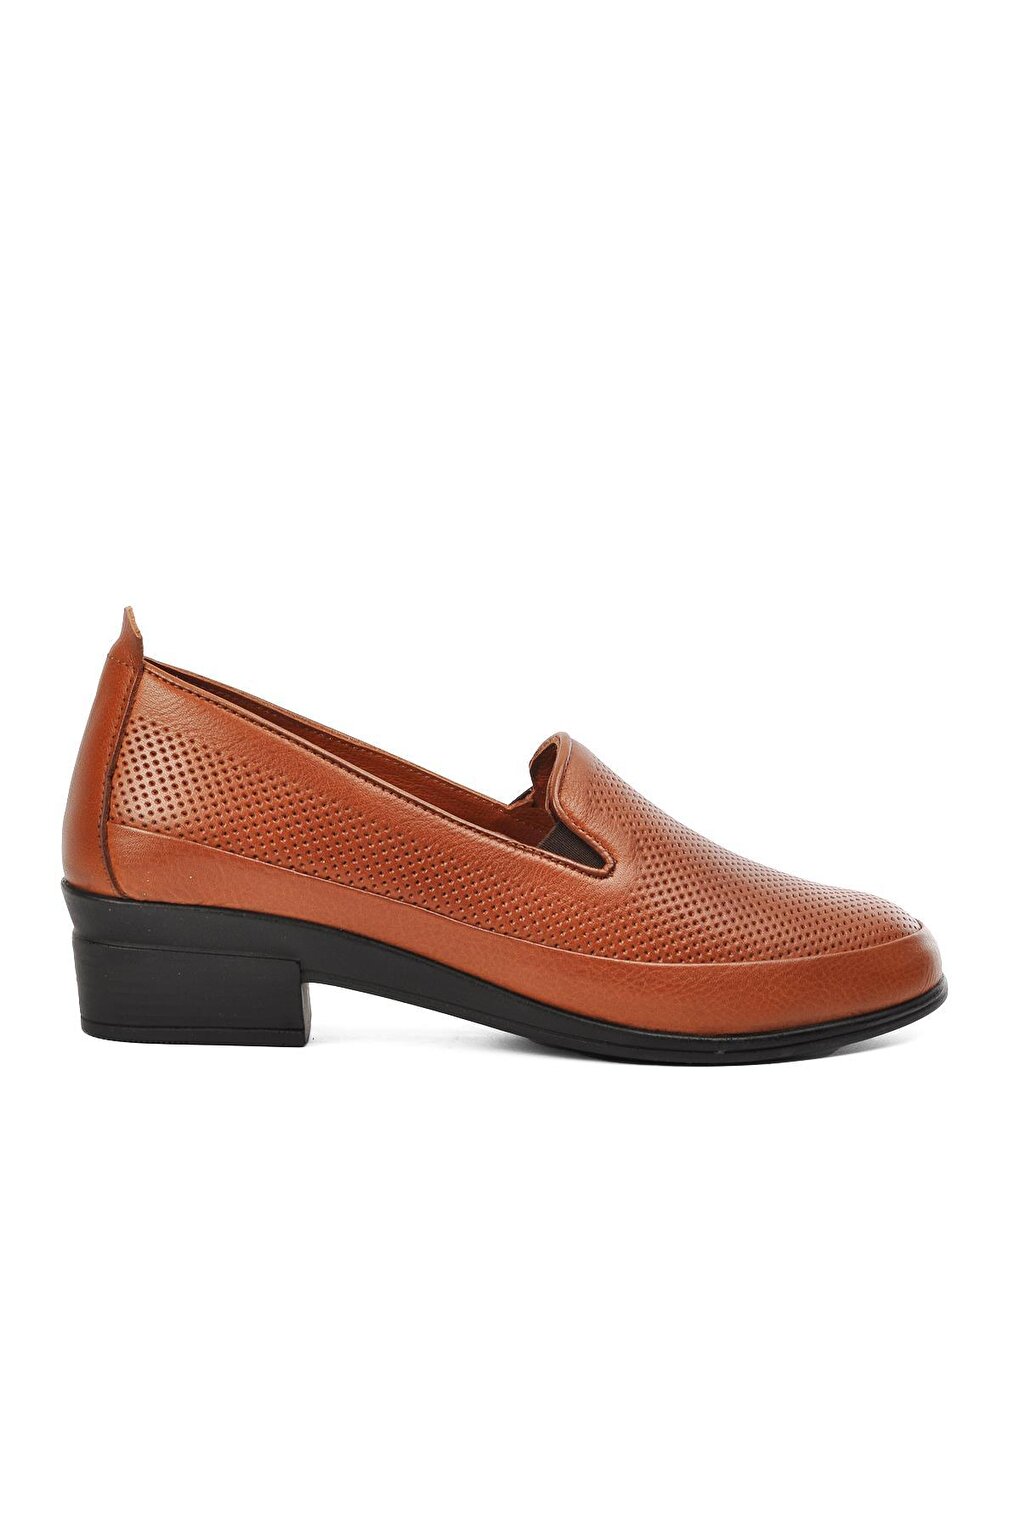 Светло-коричневые женские классические туфли из натуральной кожи 8979 Voyager